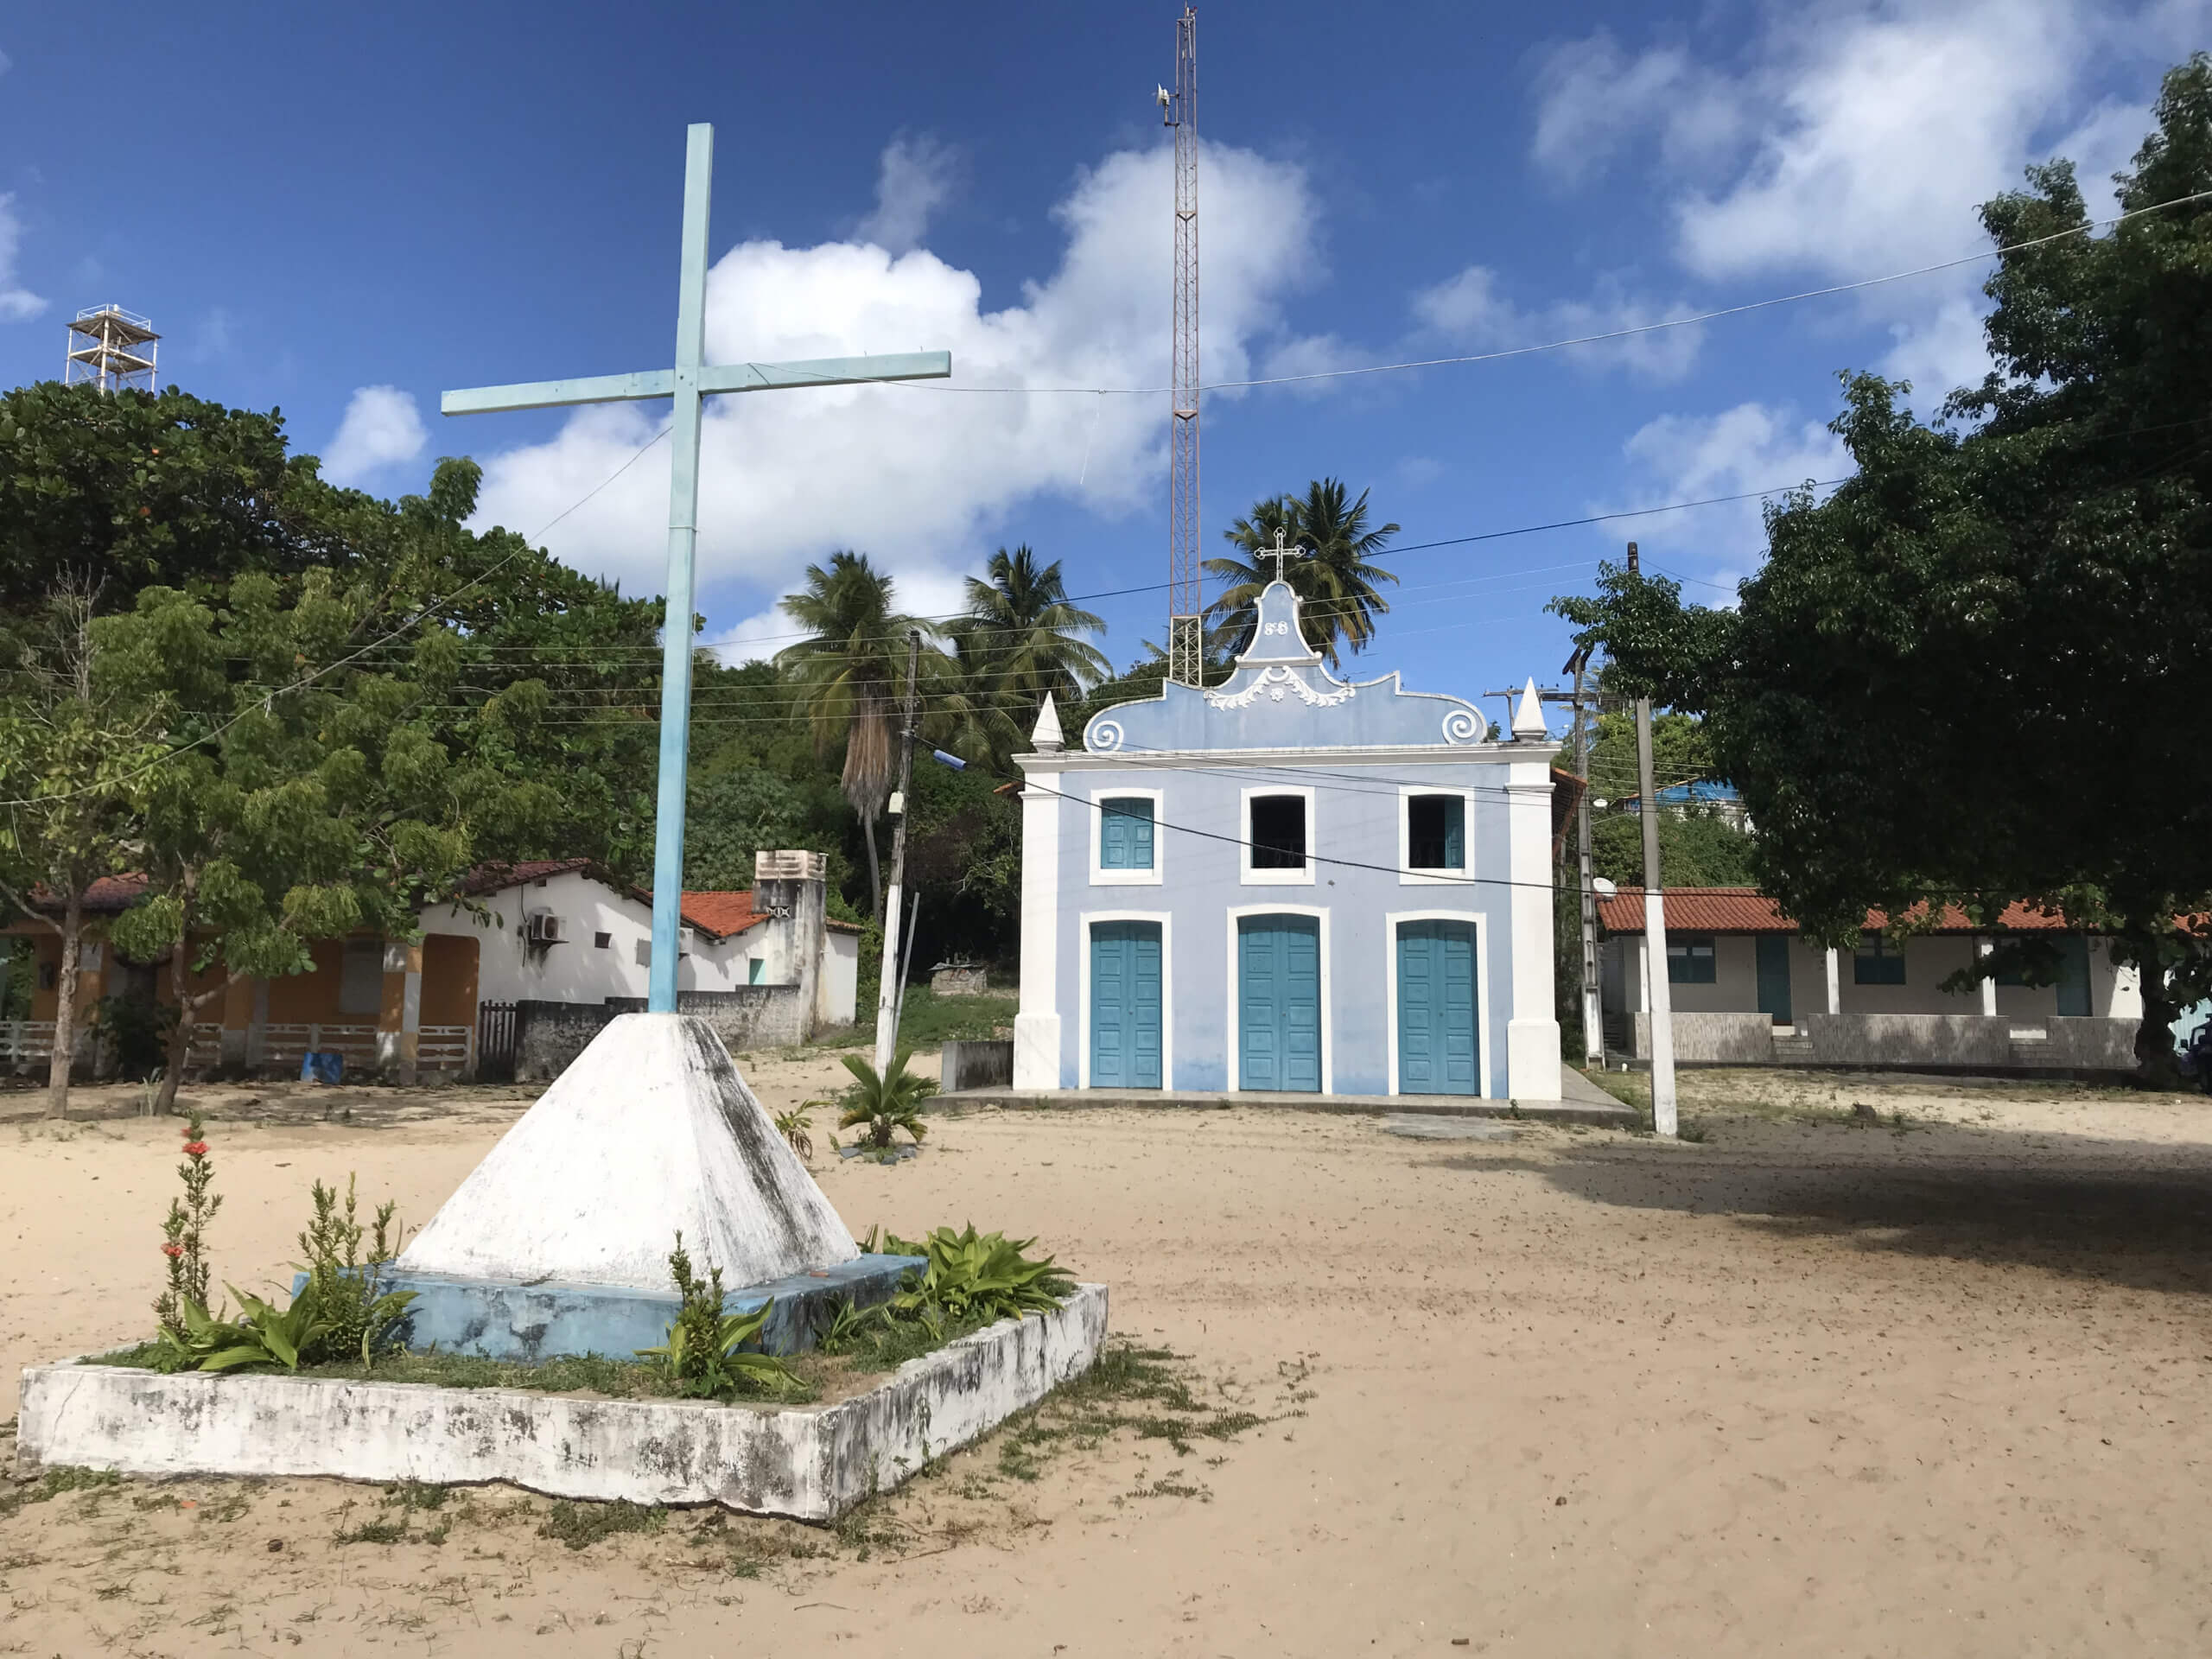 Vila de Mangue Seco - Bahia - Bate e volta de Aracaju